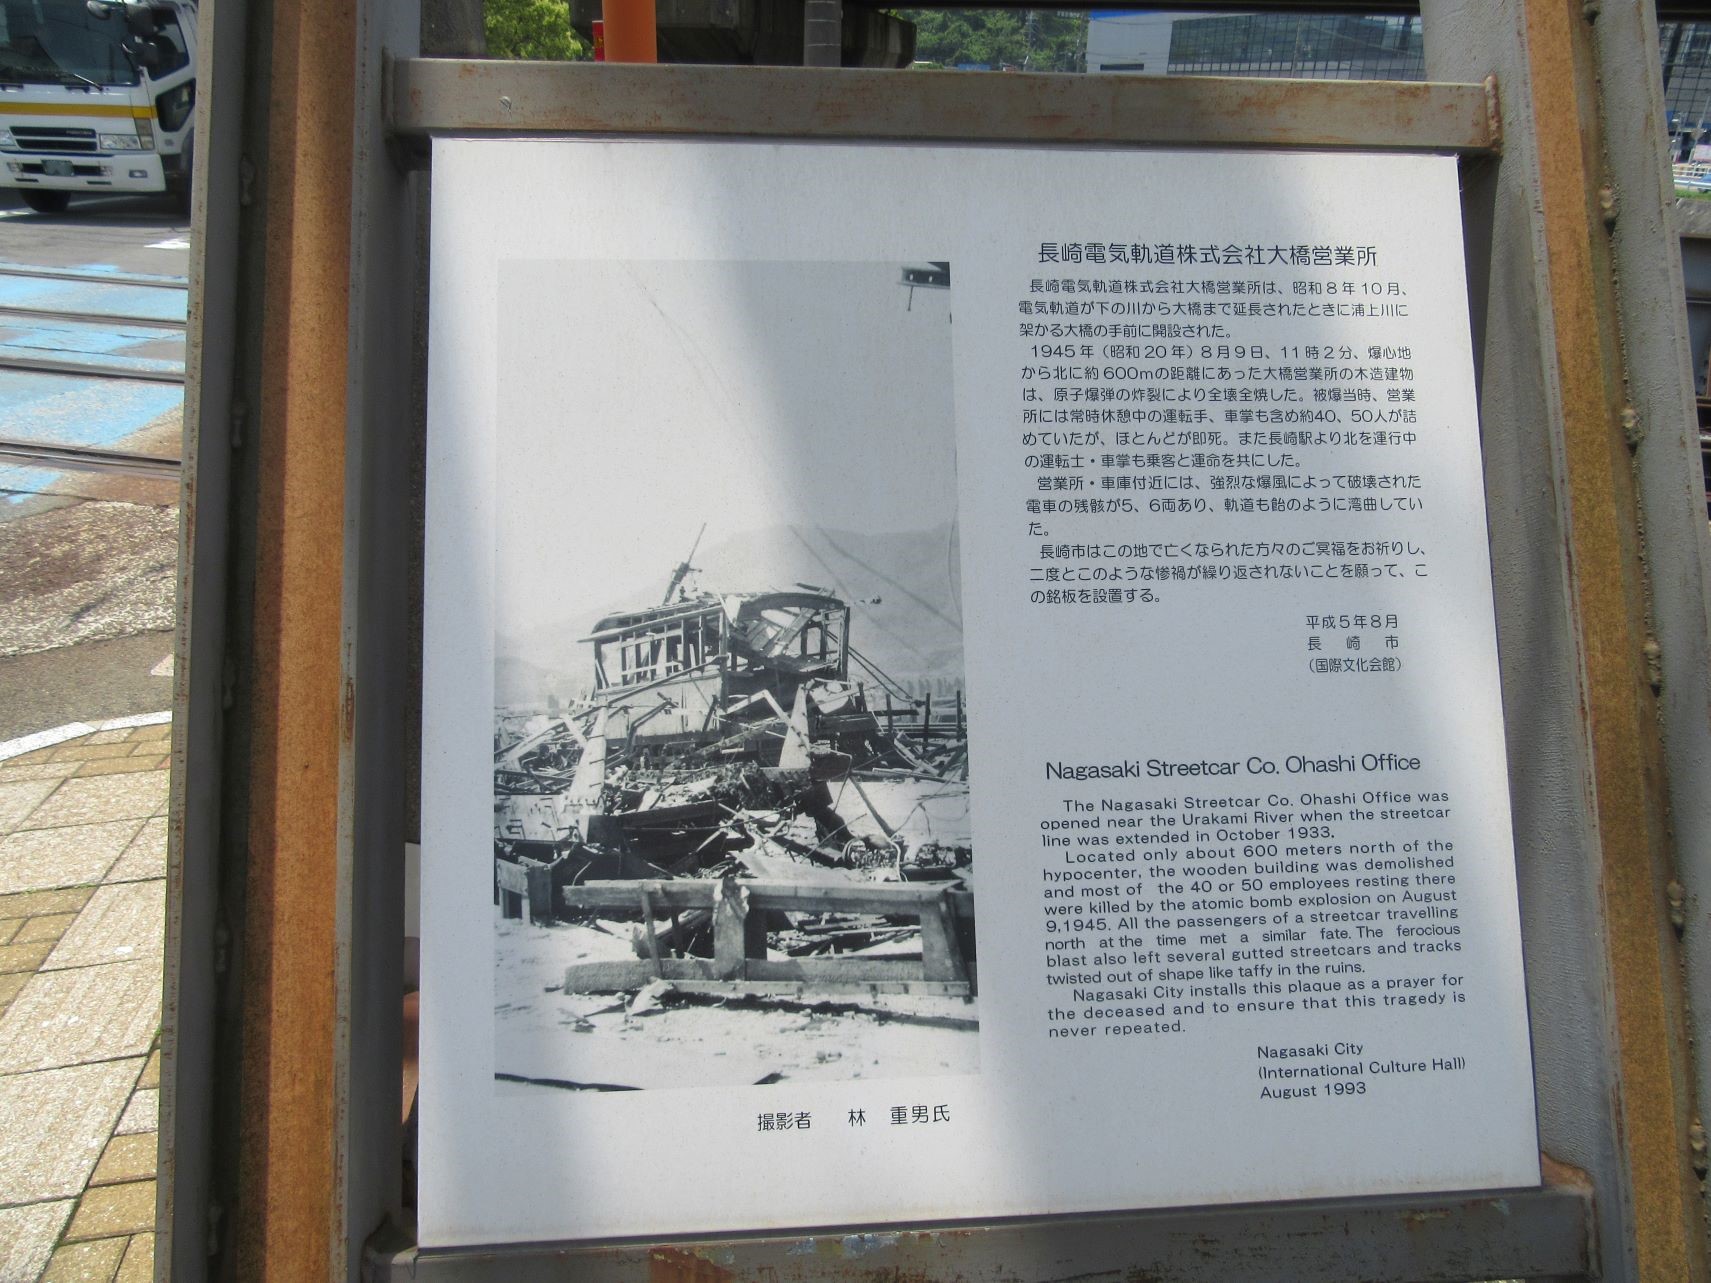 長崎電気軌道株式会社大橋営業所が原爆被害を受けたことについての銘板